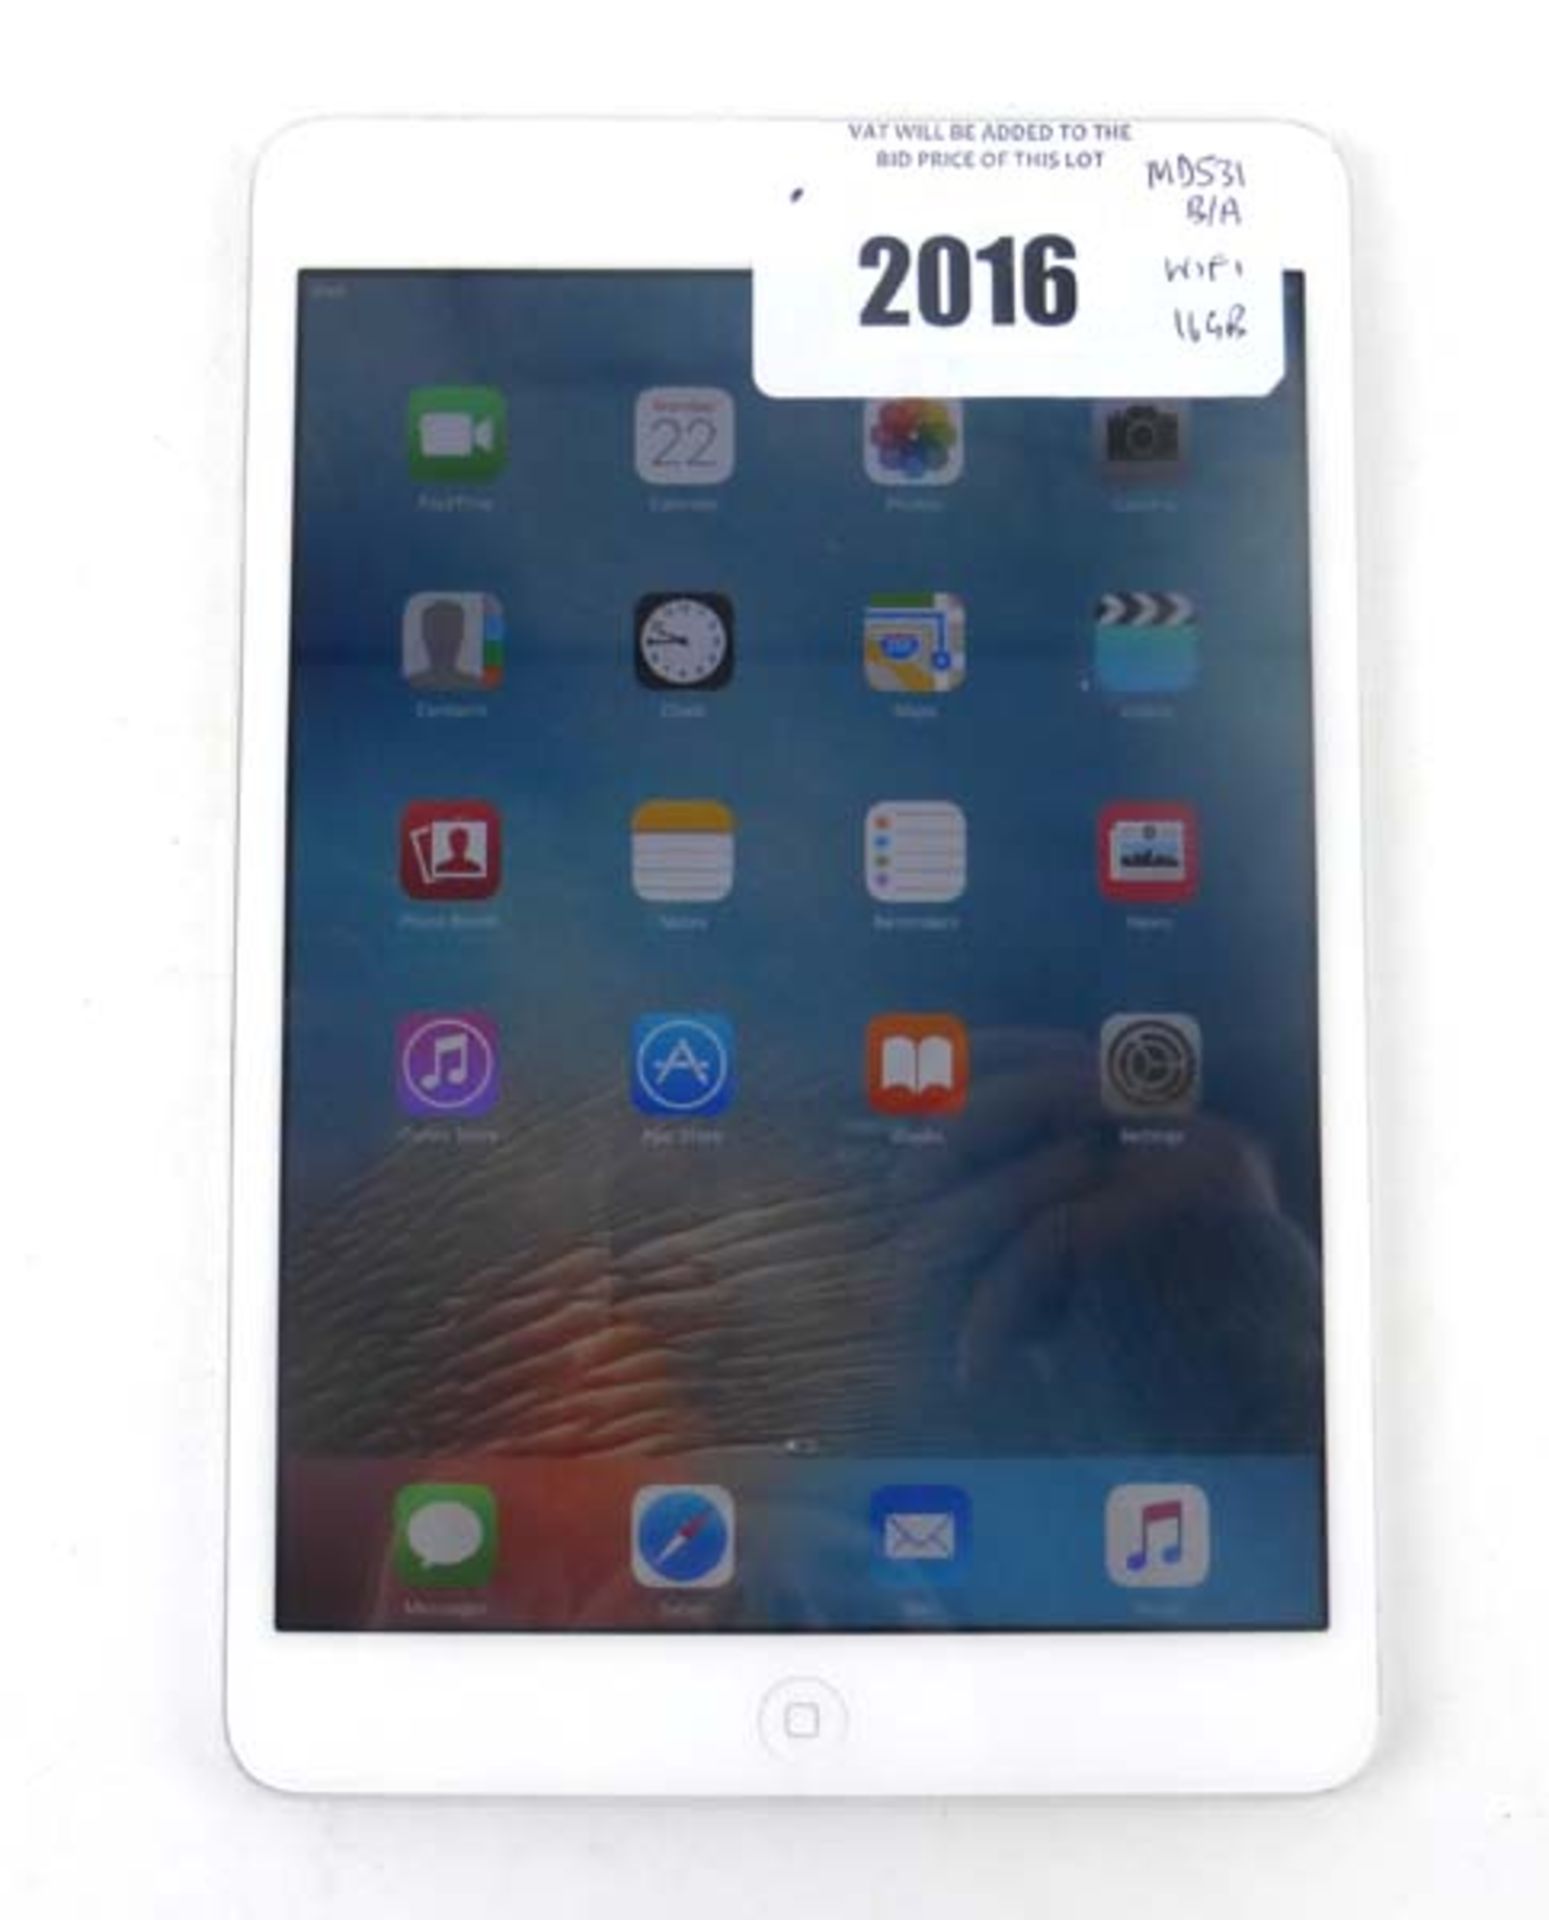 iPad Mini 7.9'' 16GB tablet (Model A1432)